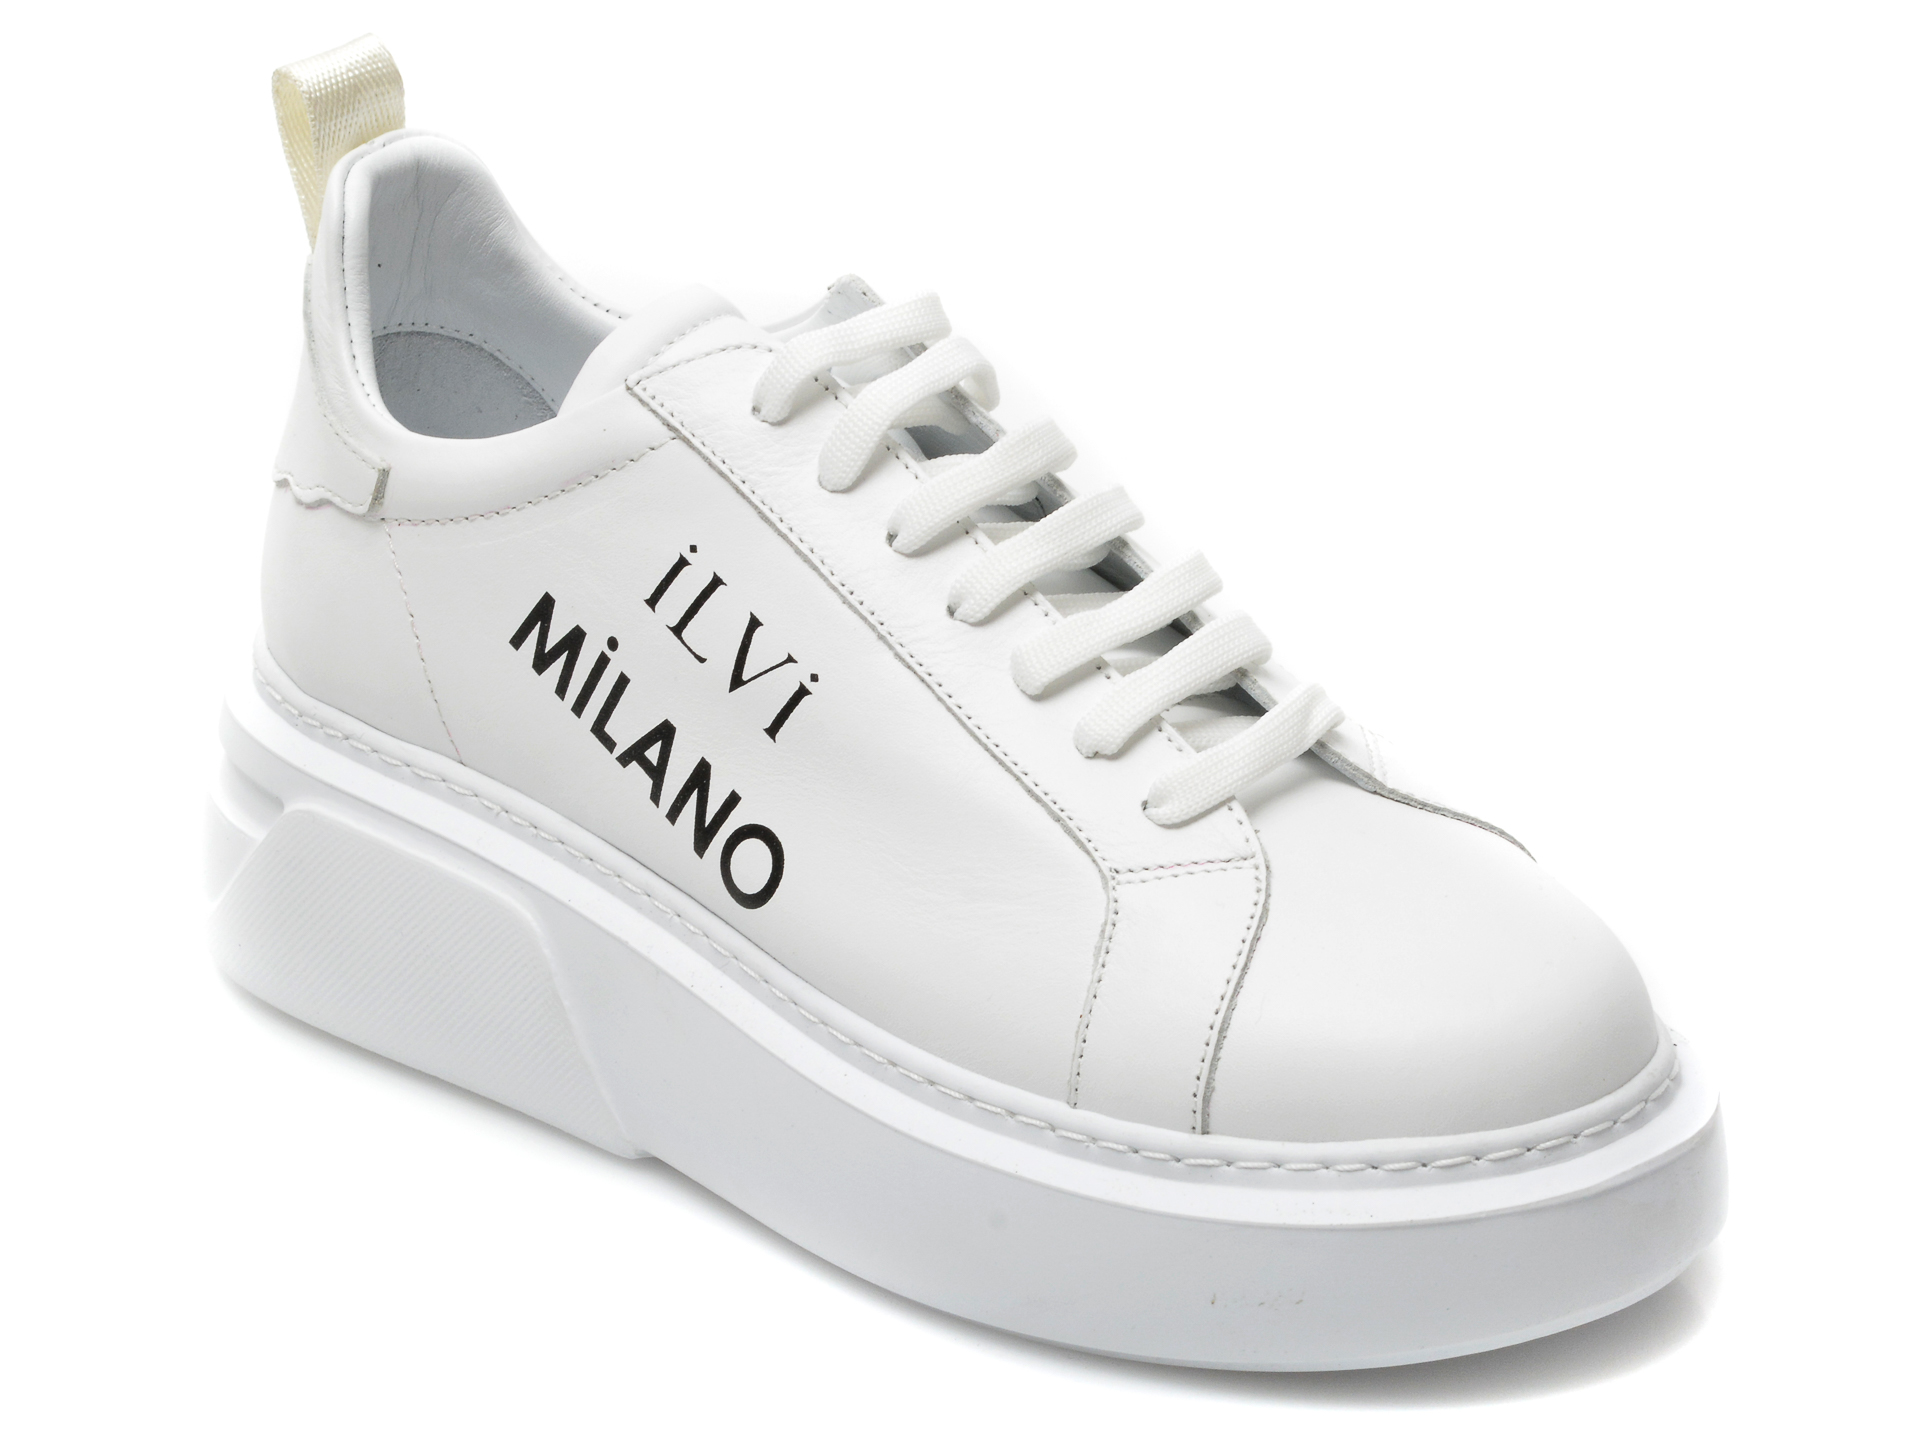 Pantofi sport ILVI albi, 228, din piele naturala /femei/pantofi